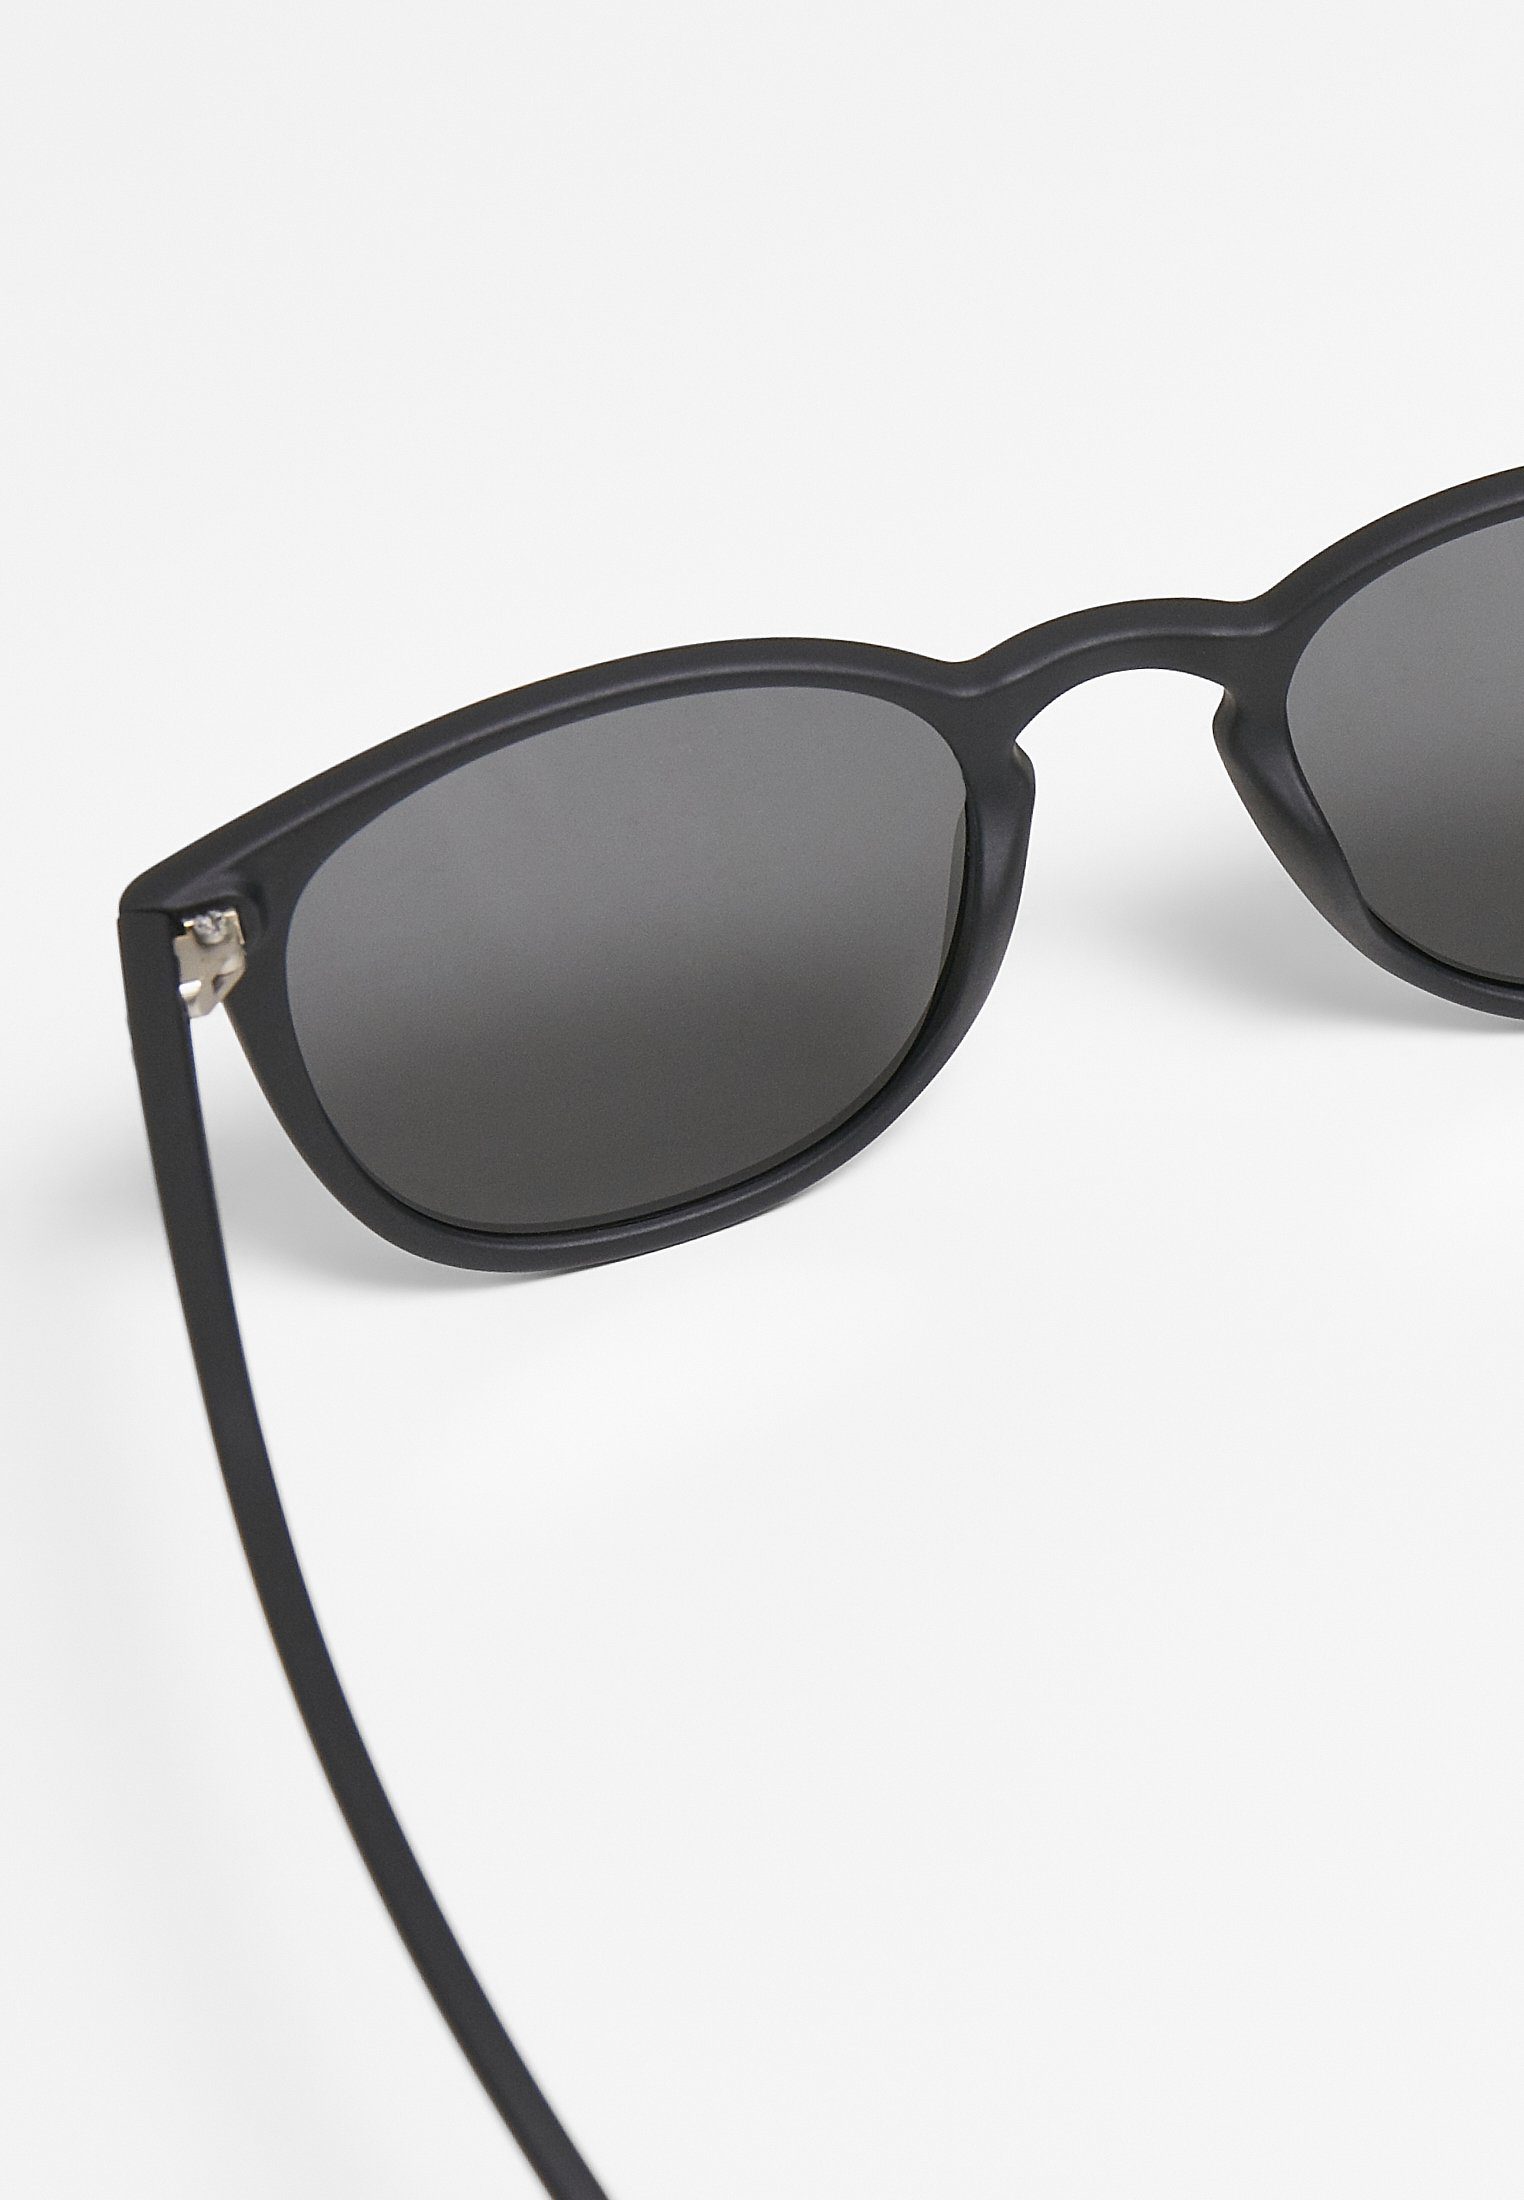 Arthur Sunglasses CLASSICS Sonnenbrille URBAN Accessoires black/grey UC